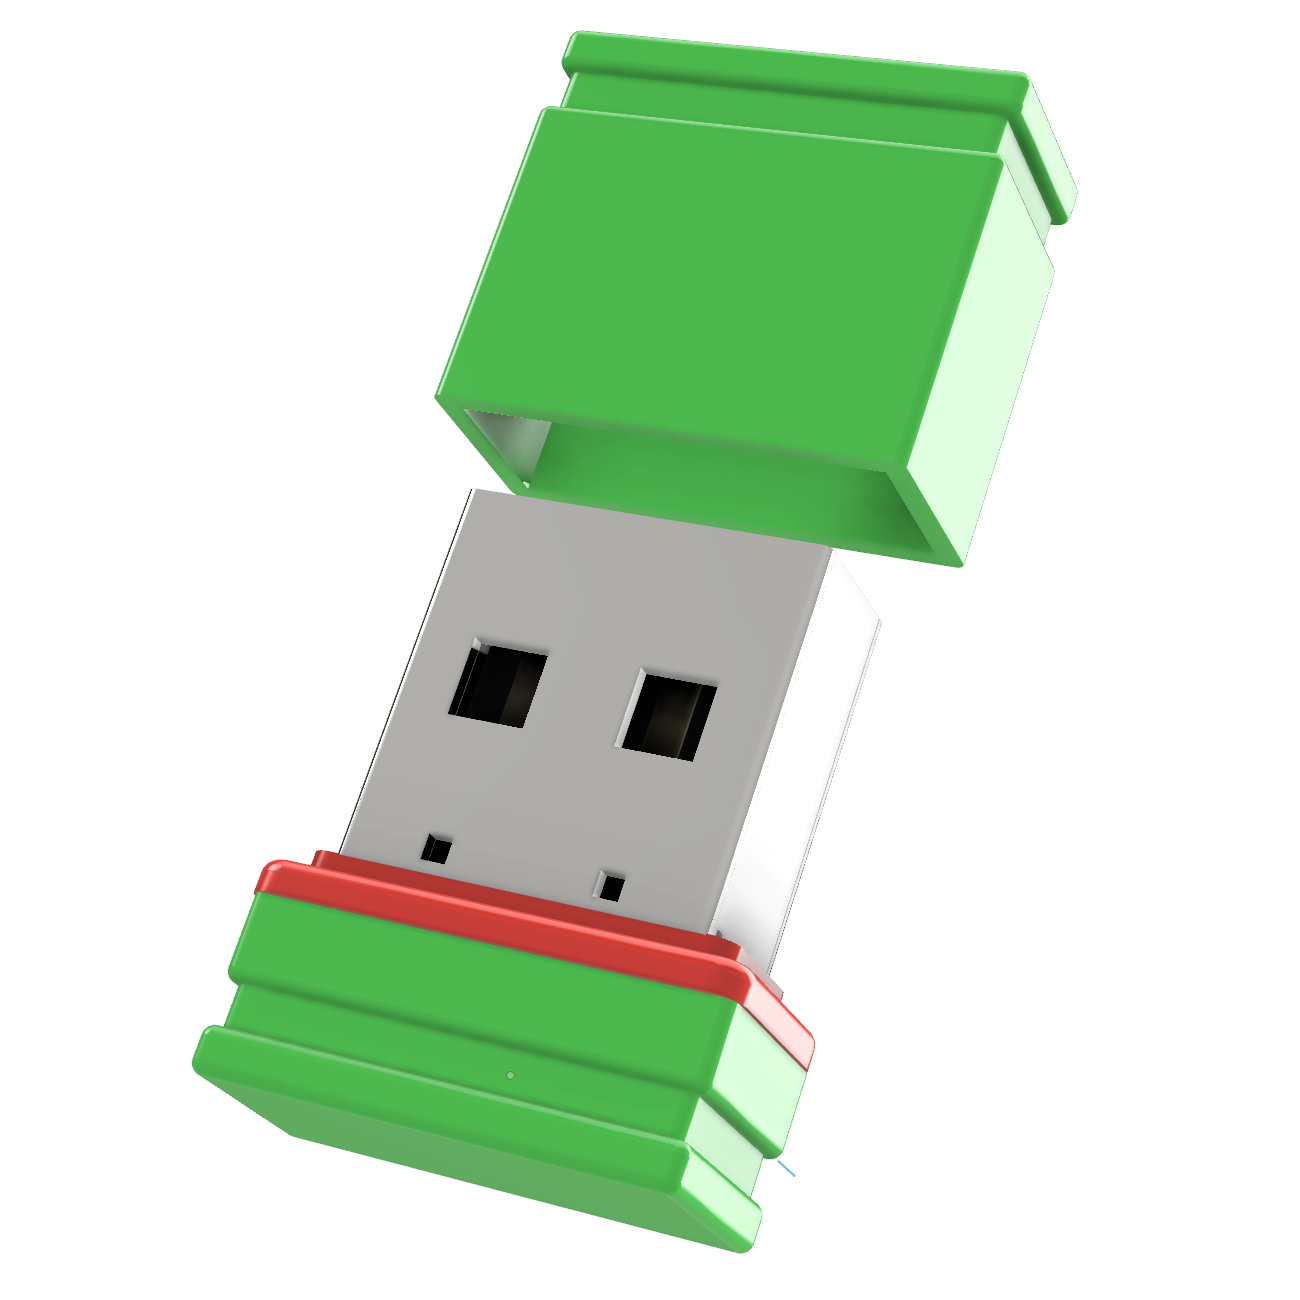 P1 USB GERMANY ®ULTRA Mini (Grün/Rot, USB-Stick GB) 4